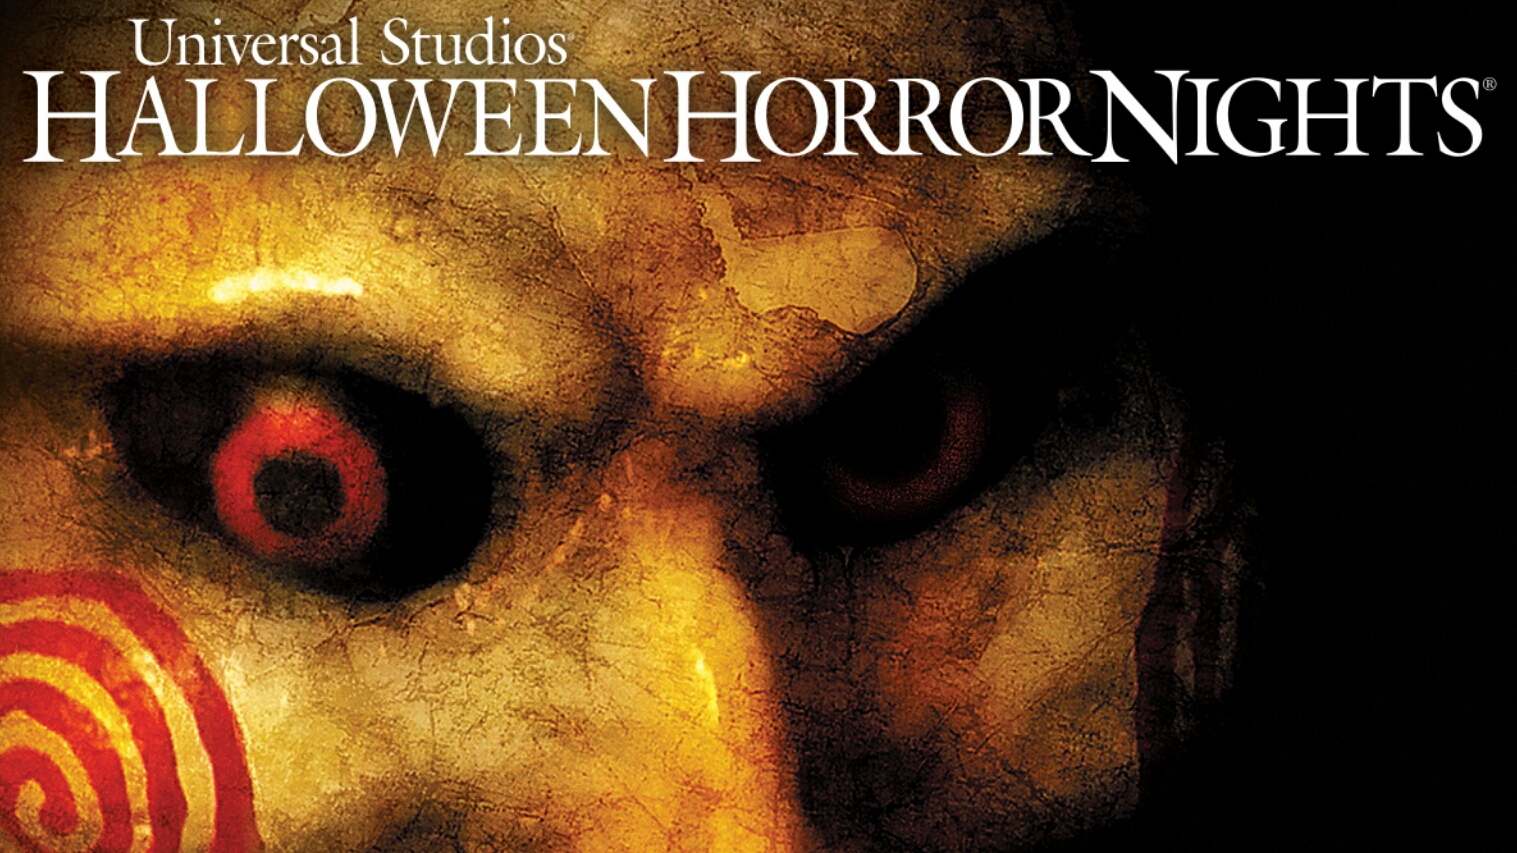 Jogos Mortais retorna ao Halloween Horror Nights do Universal Studios